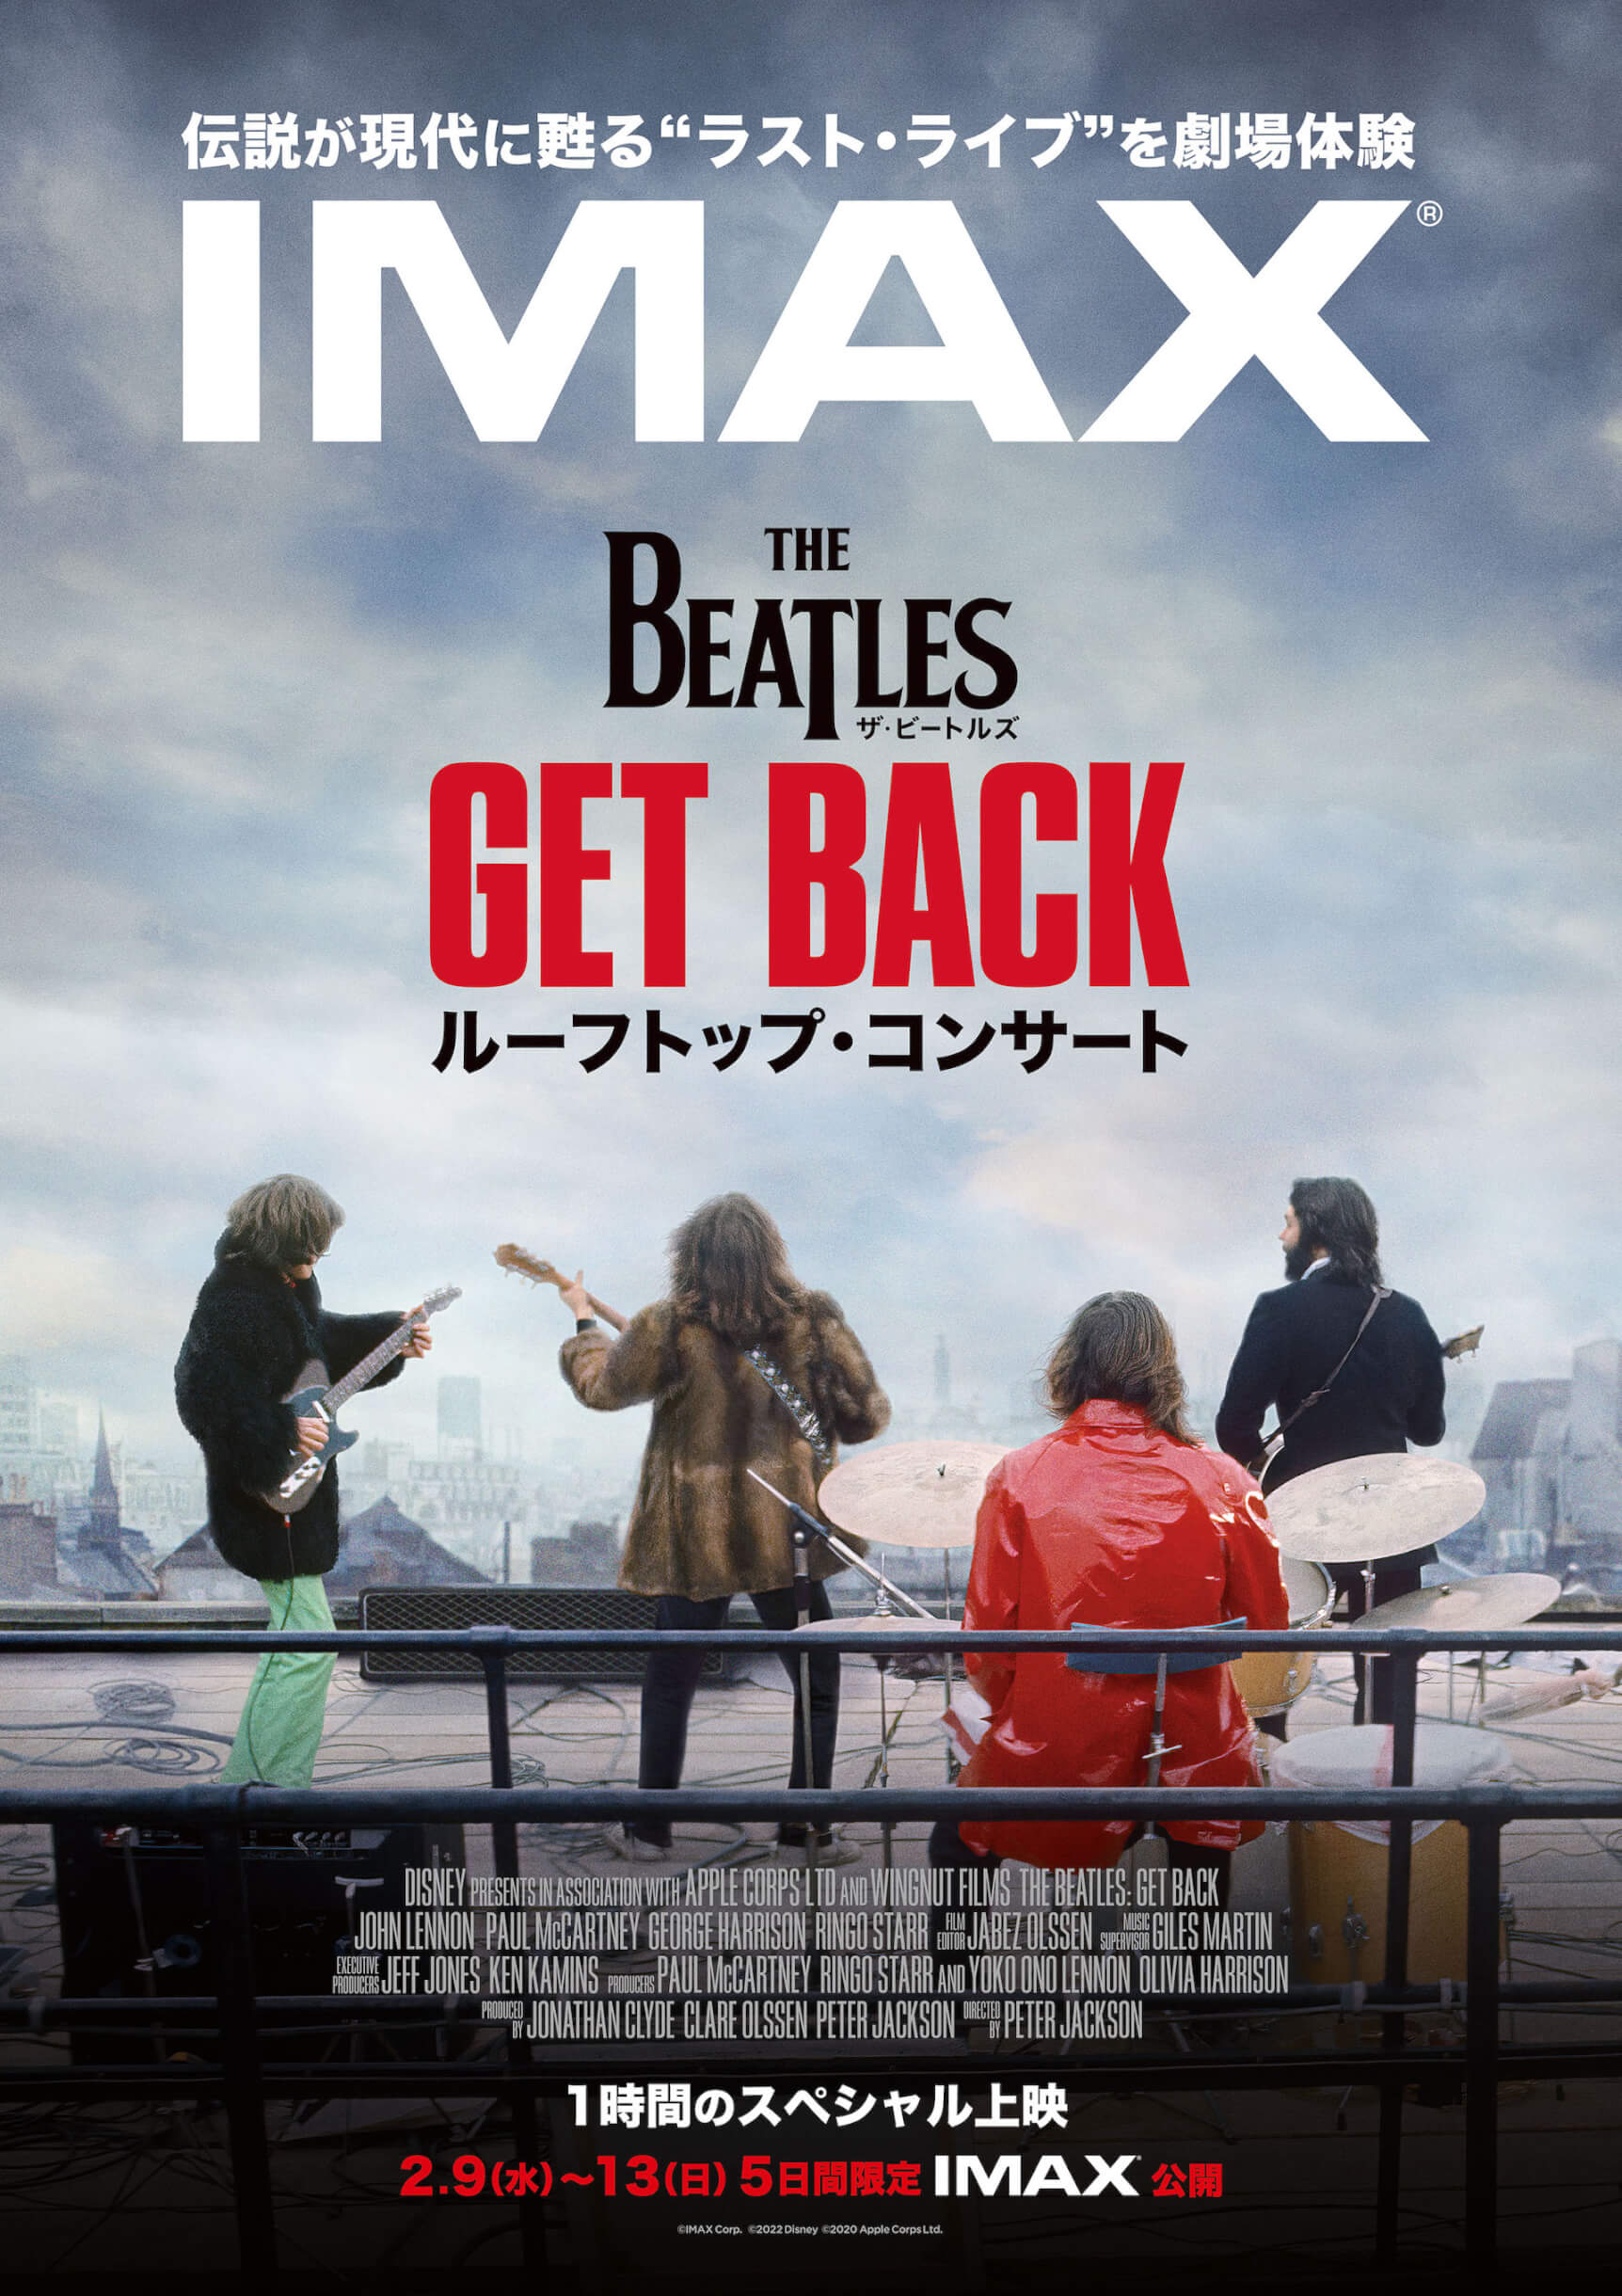 The Beatlesのラストライブパフォーマンス「ルーフトップ・コンサート」が5日間限定でIMAX®上映！ music_220127_getback_01